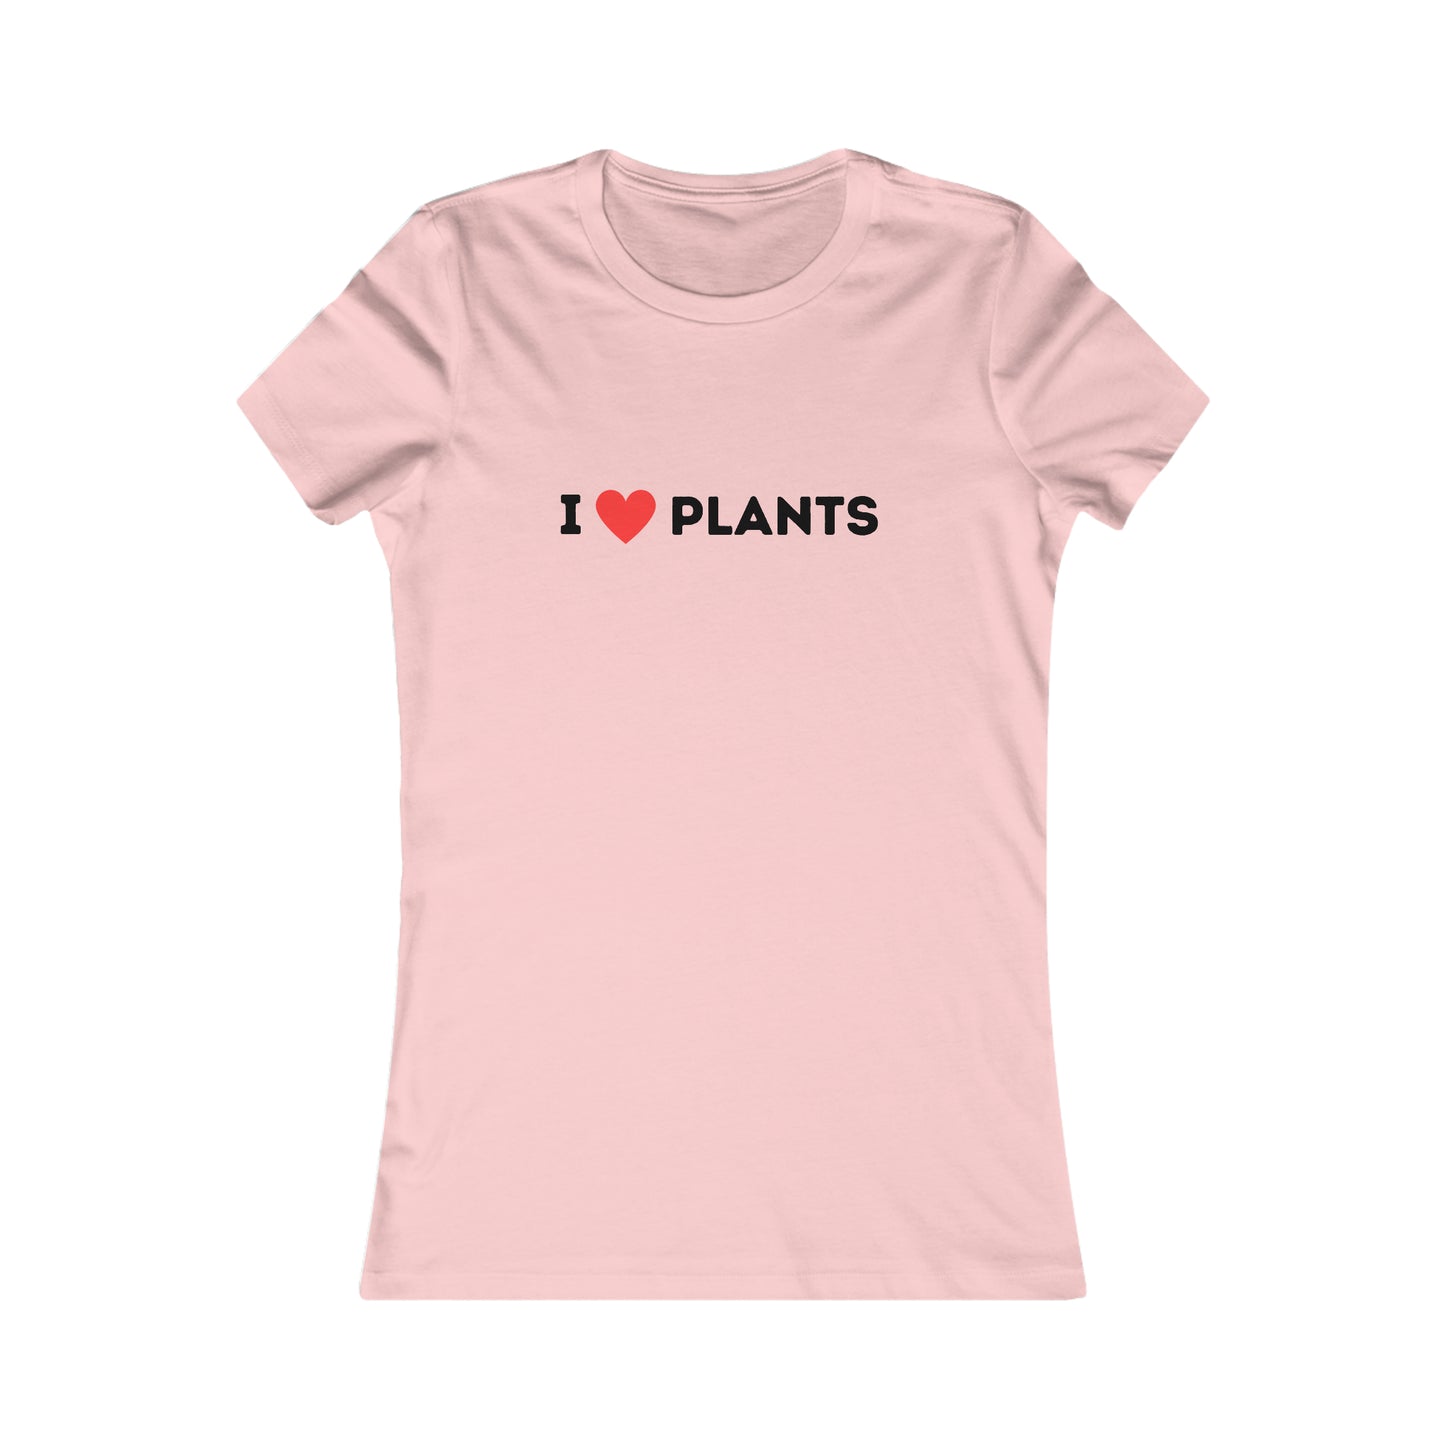 Love Plants Women's Favorite Tee